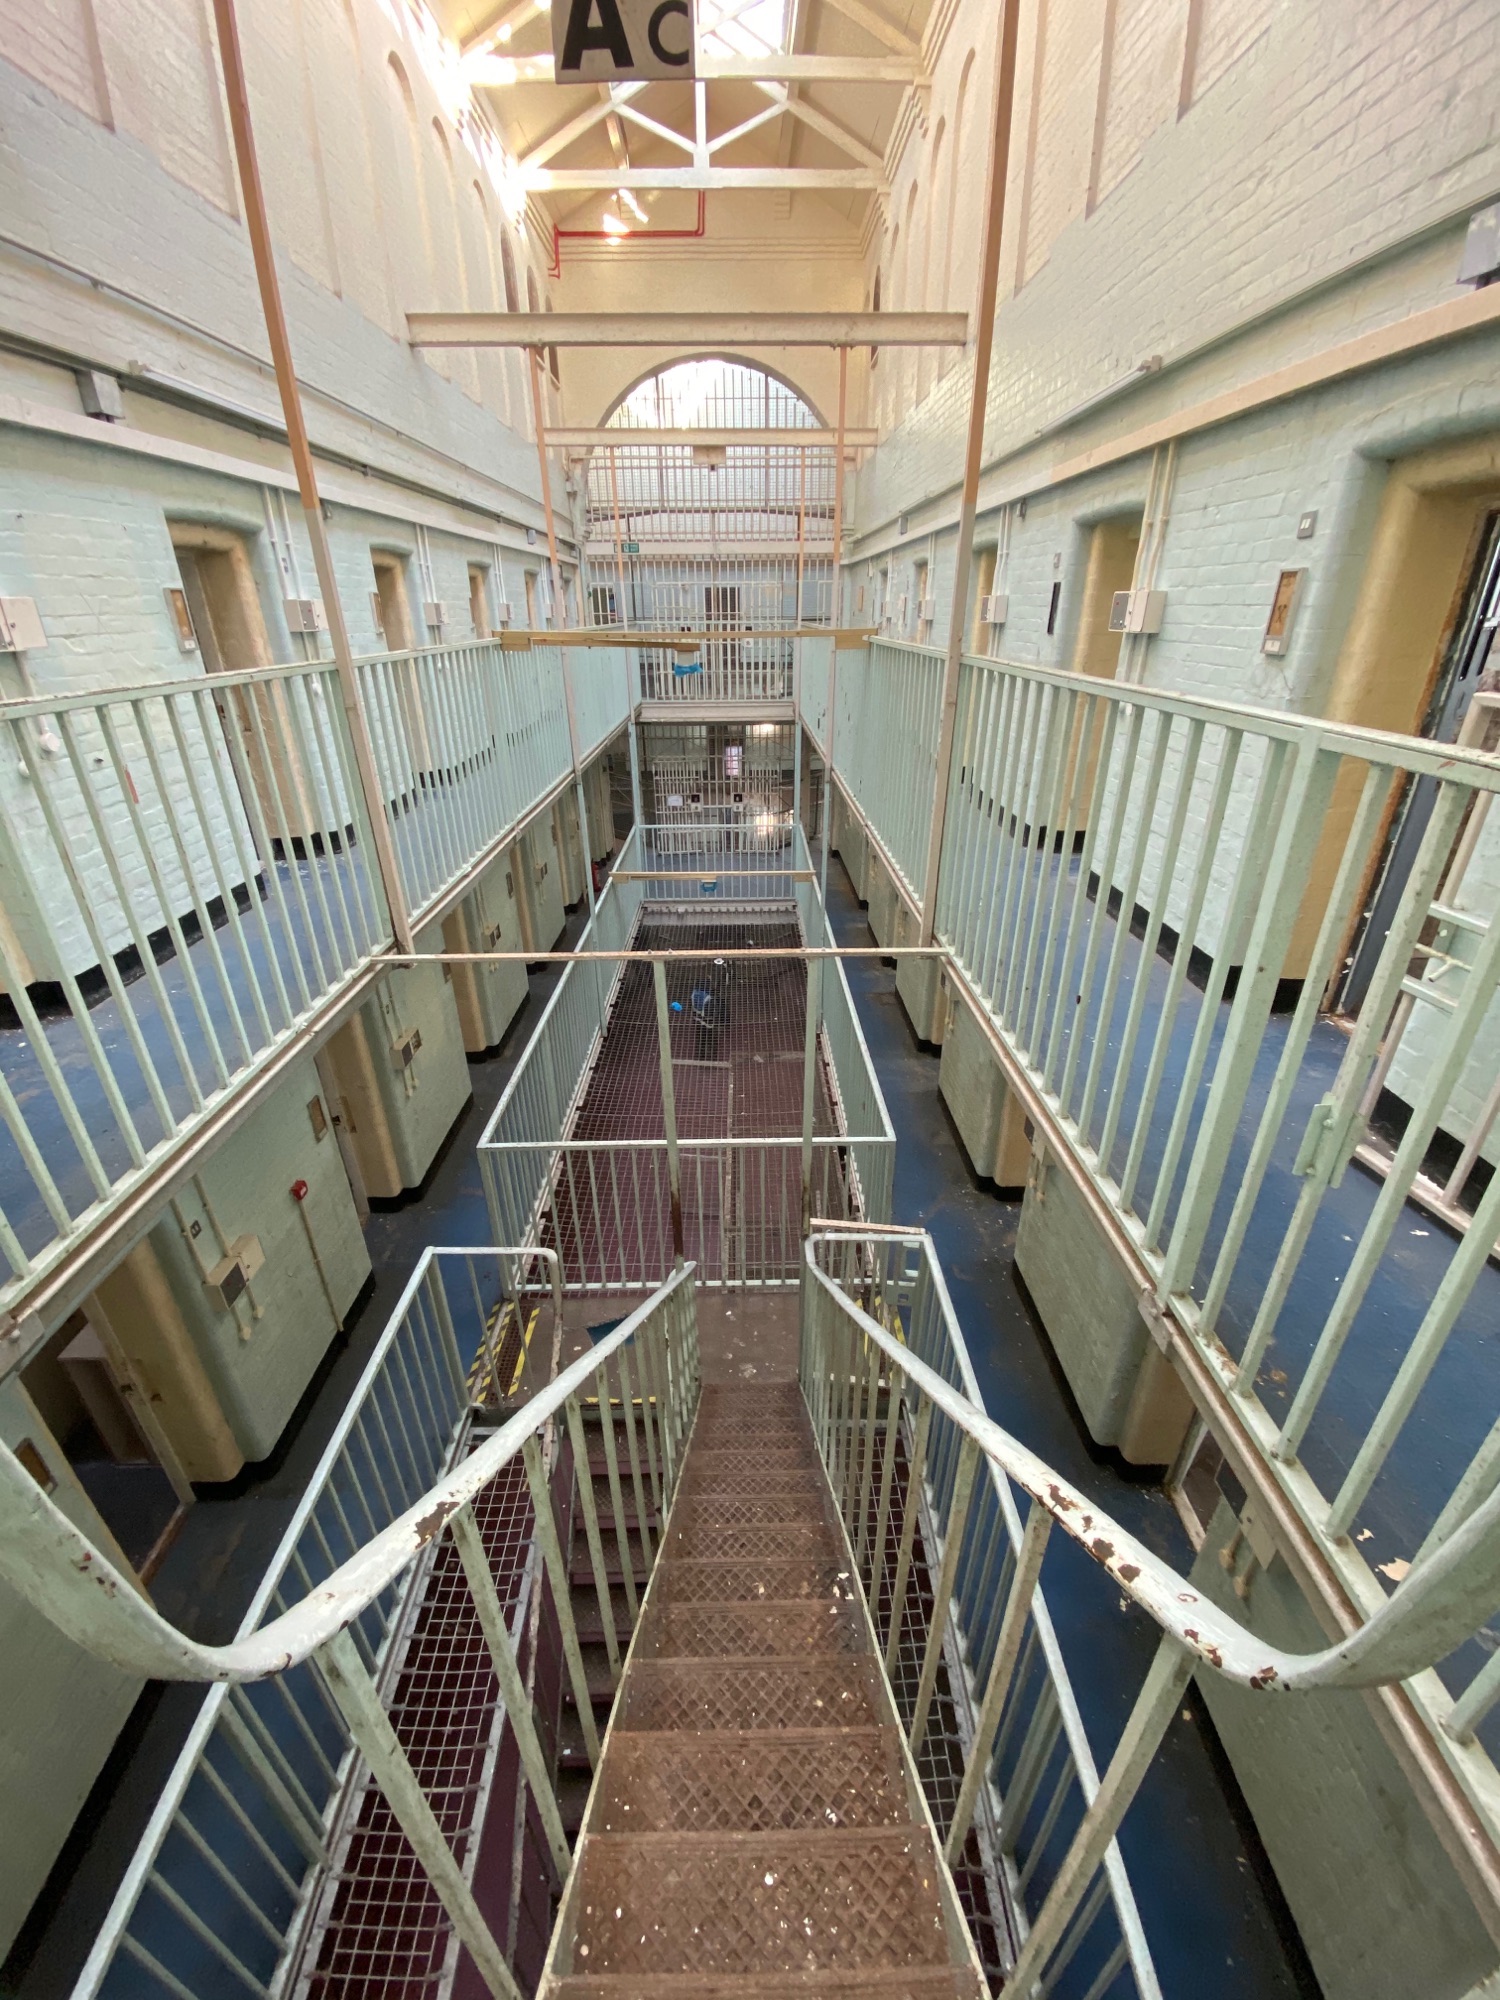 visit dorchester prison